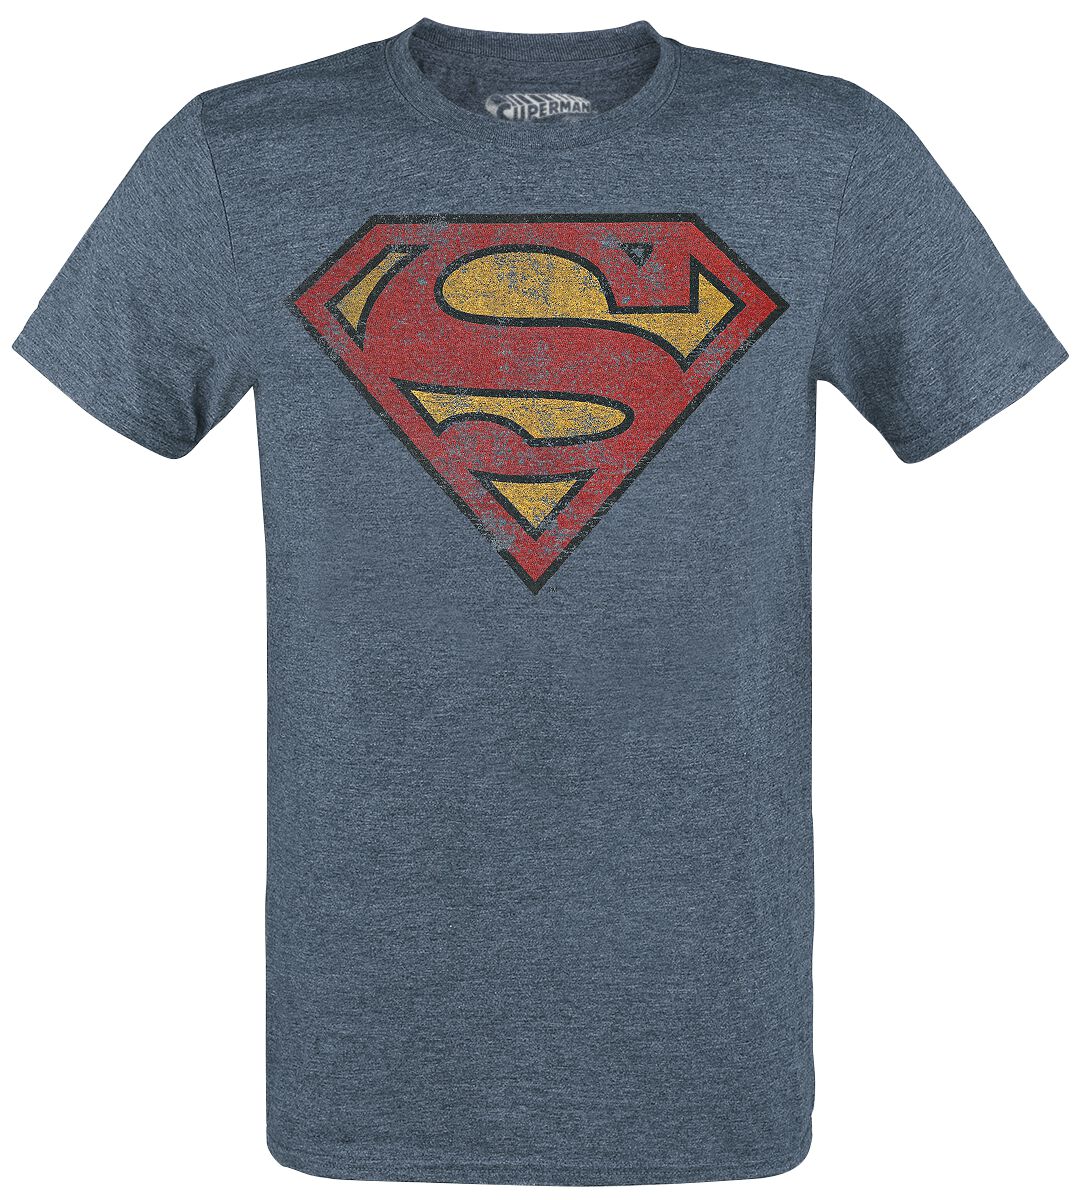 Superman - DC Comics T-Shirt - Logo - M bis XXL - für Männer - Größe XXL - blau meliert  - Lizenzierter Fanartikel